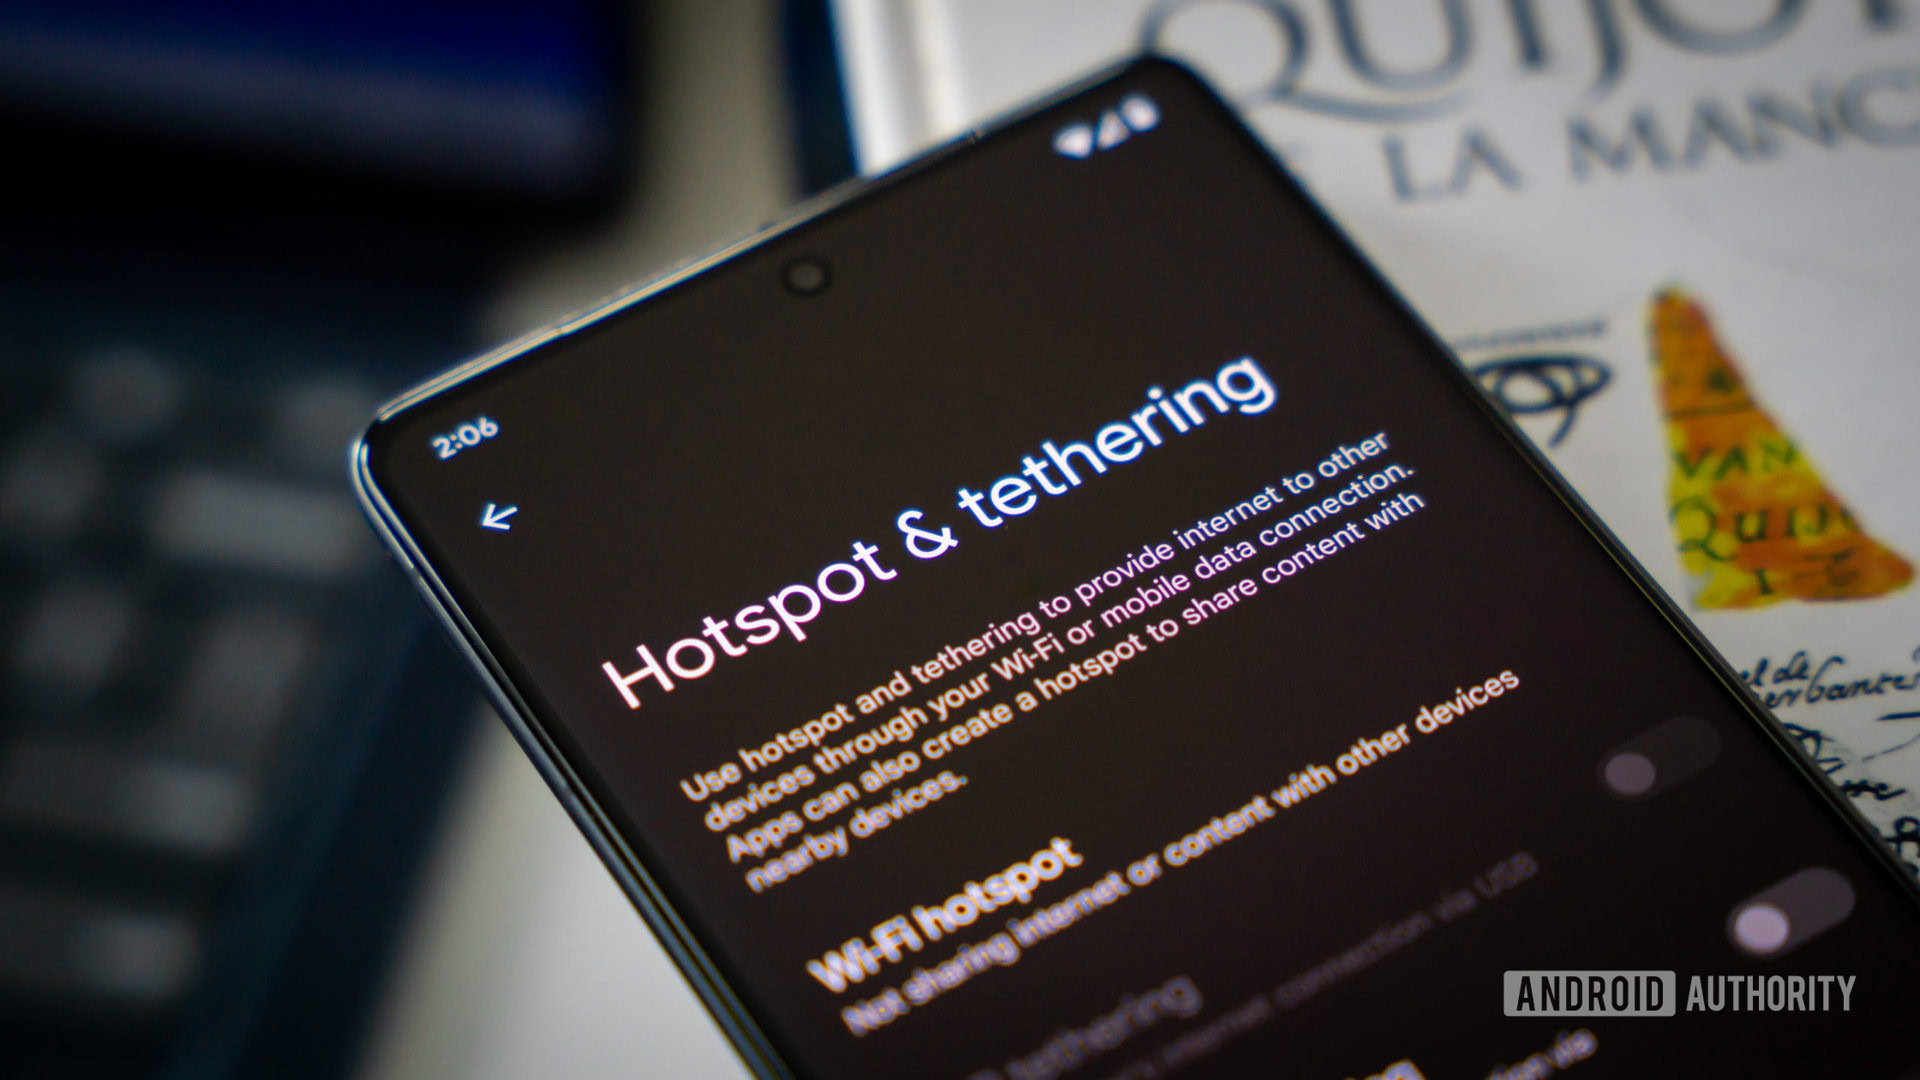 La función Android Instant Hotspot se detalla en la página de soporte